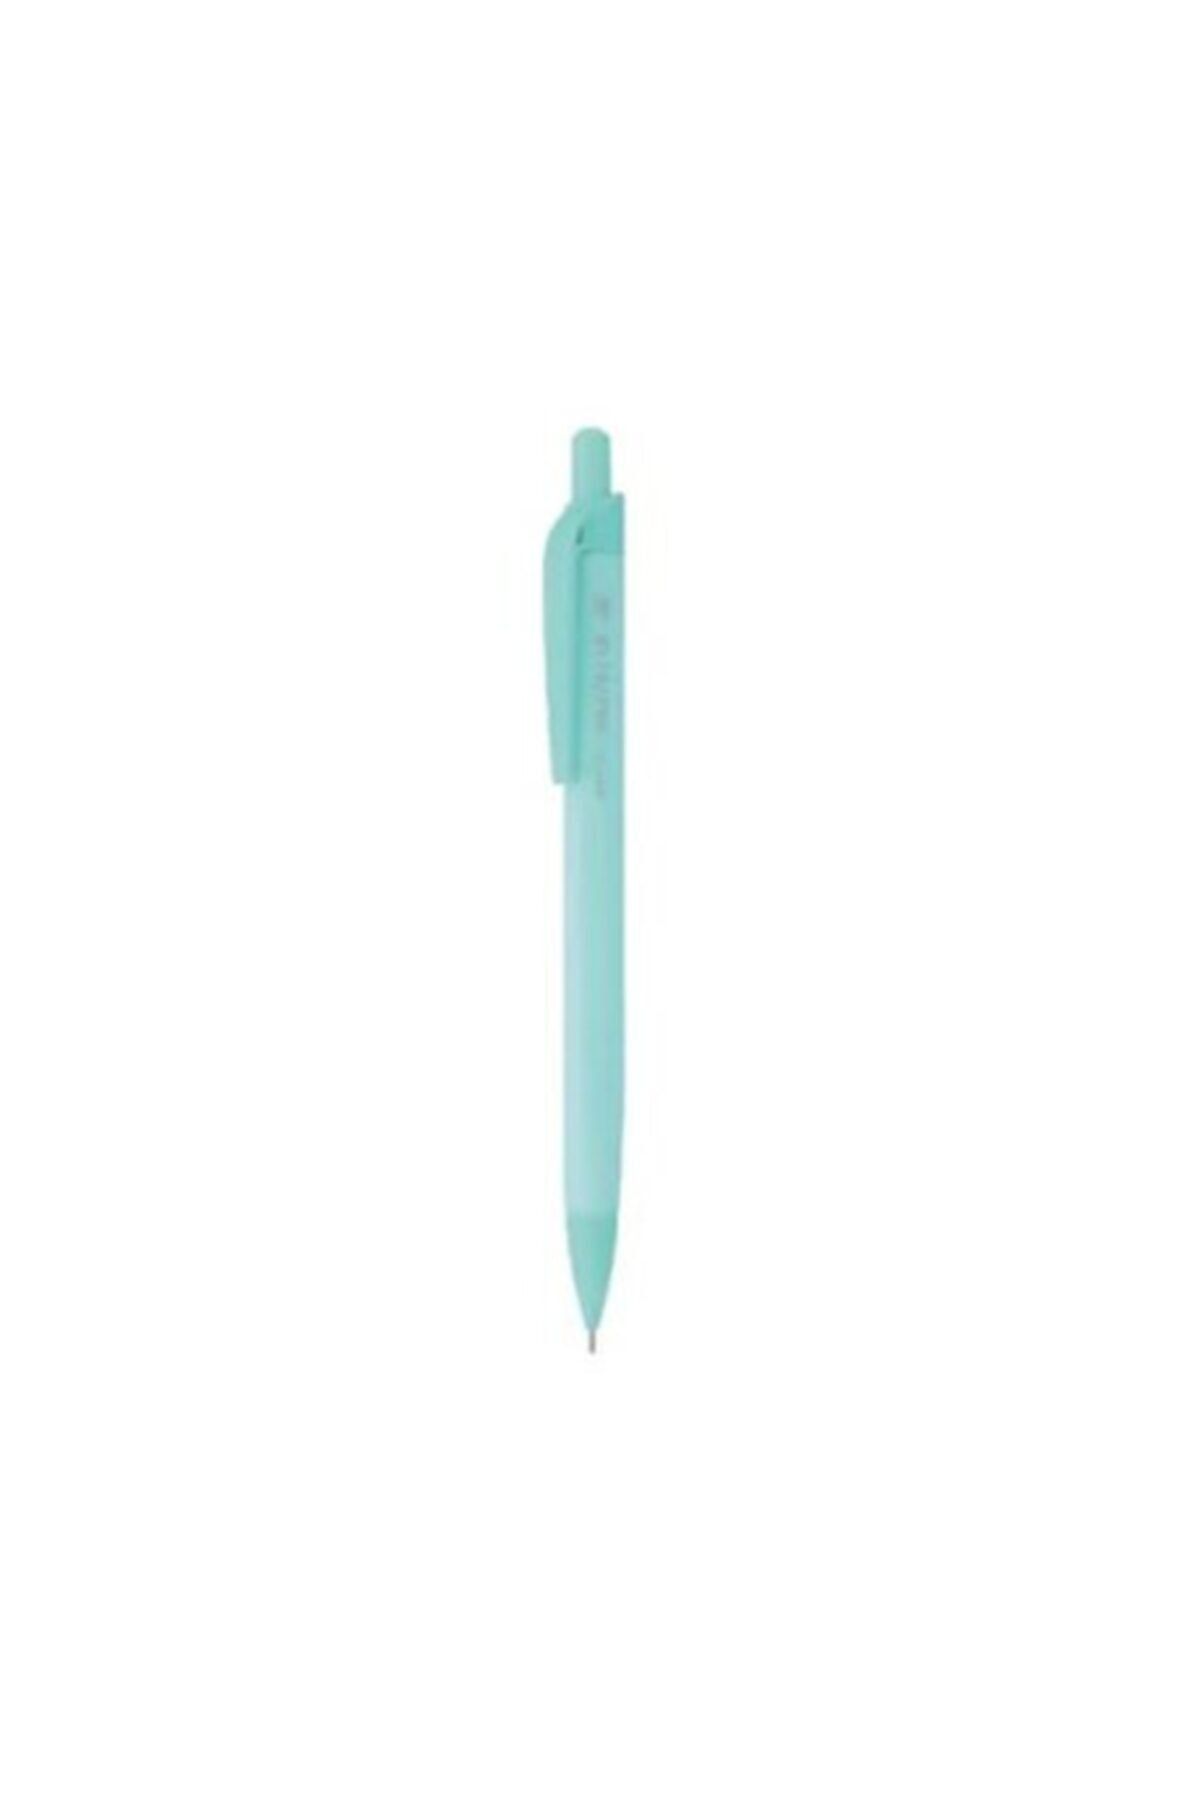 Gıpta Uçlu (versatil) Kurşun Kalem 0.7 Mm, Pastel Tonları, Açık Mavi